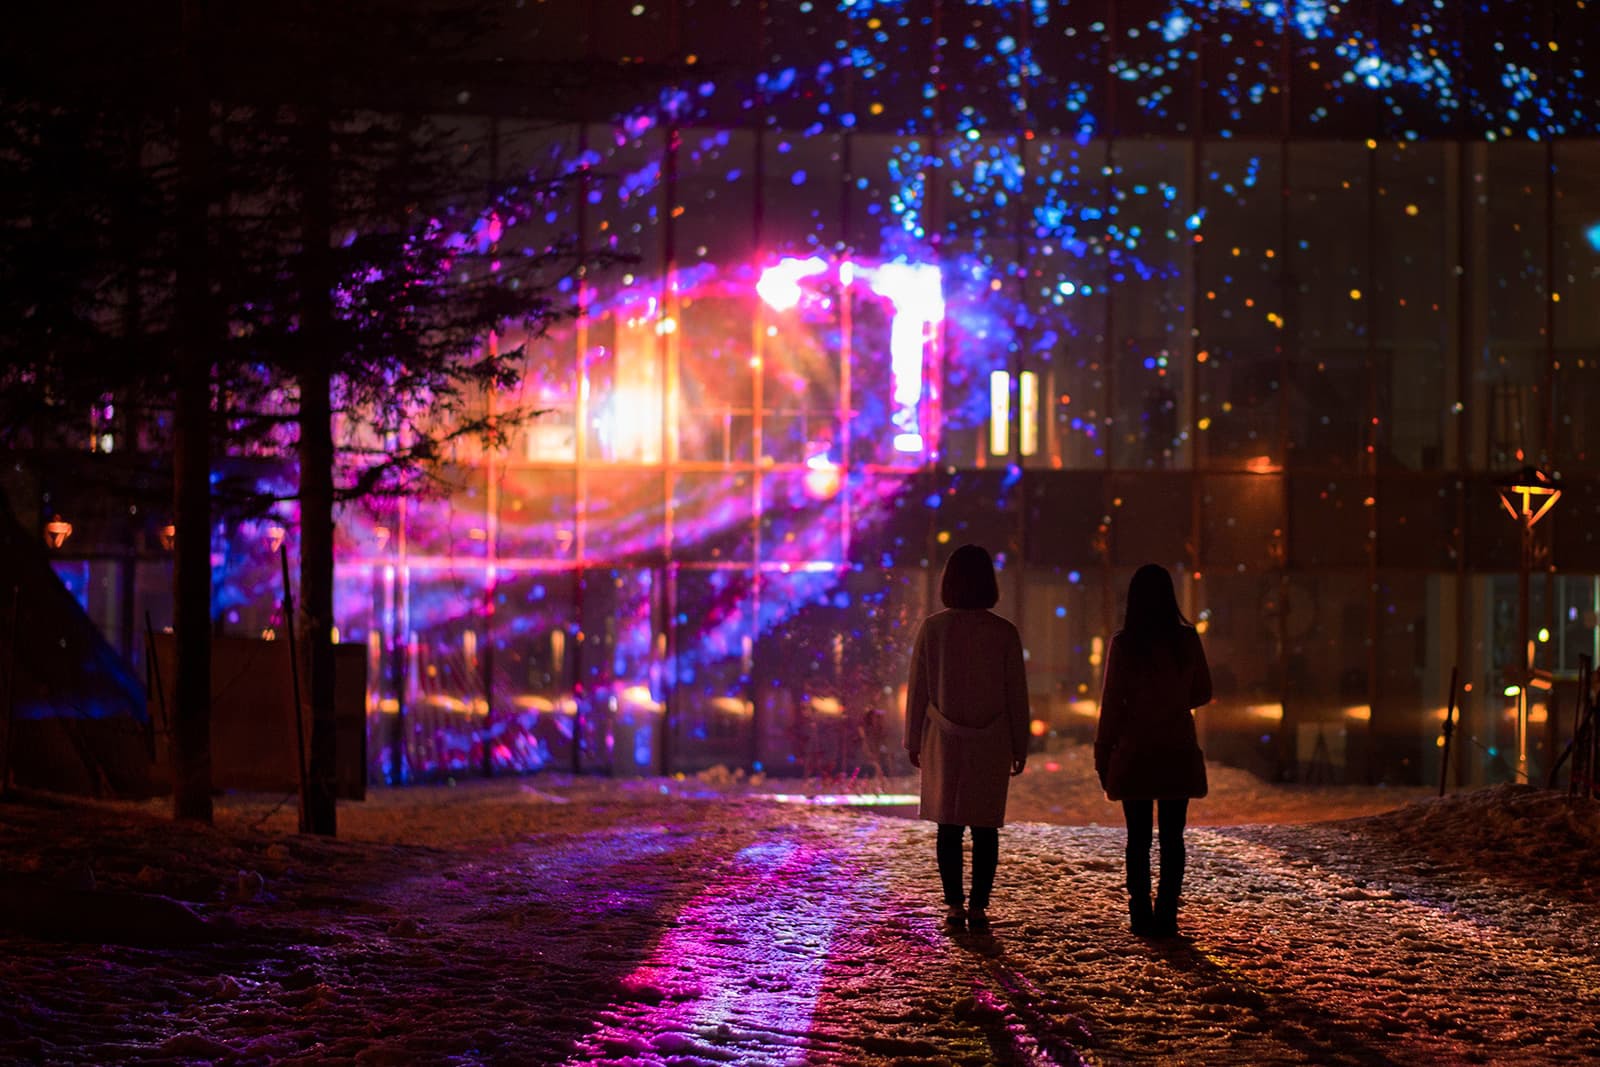 Winter illuminations at Rusutsu Resort in Hokkaido